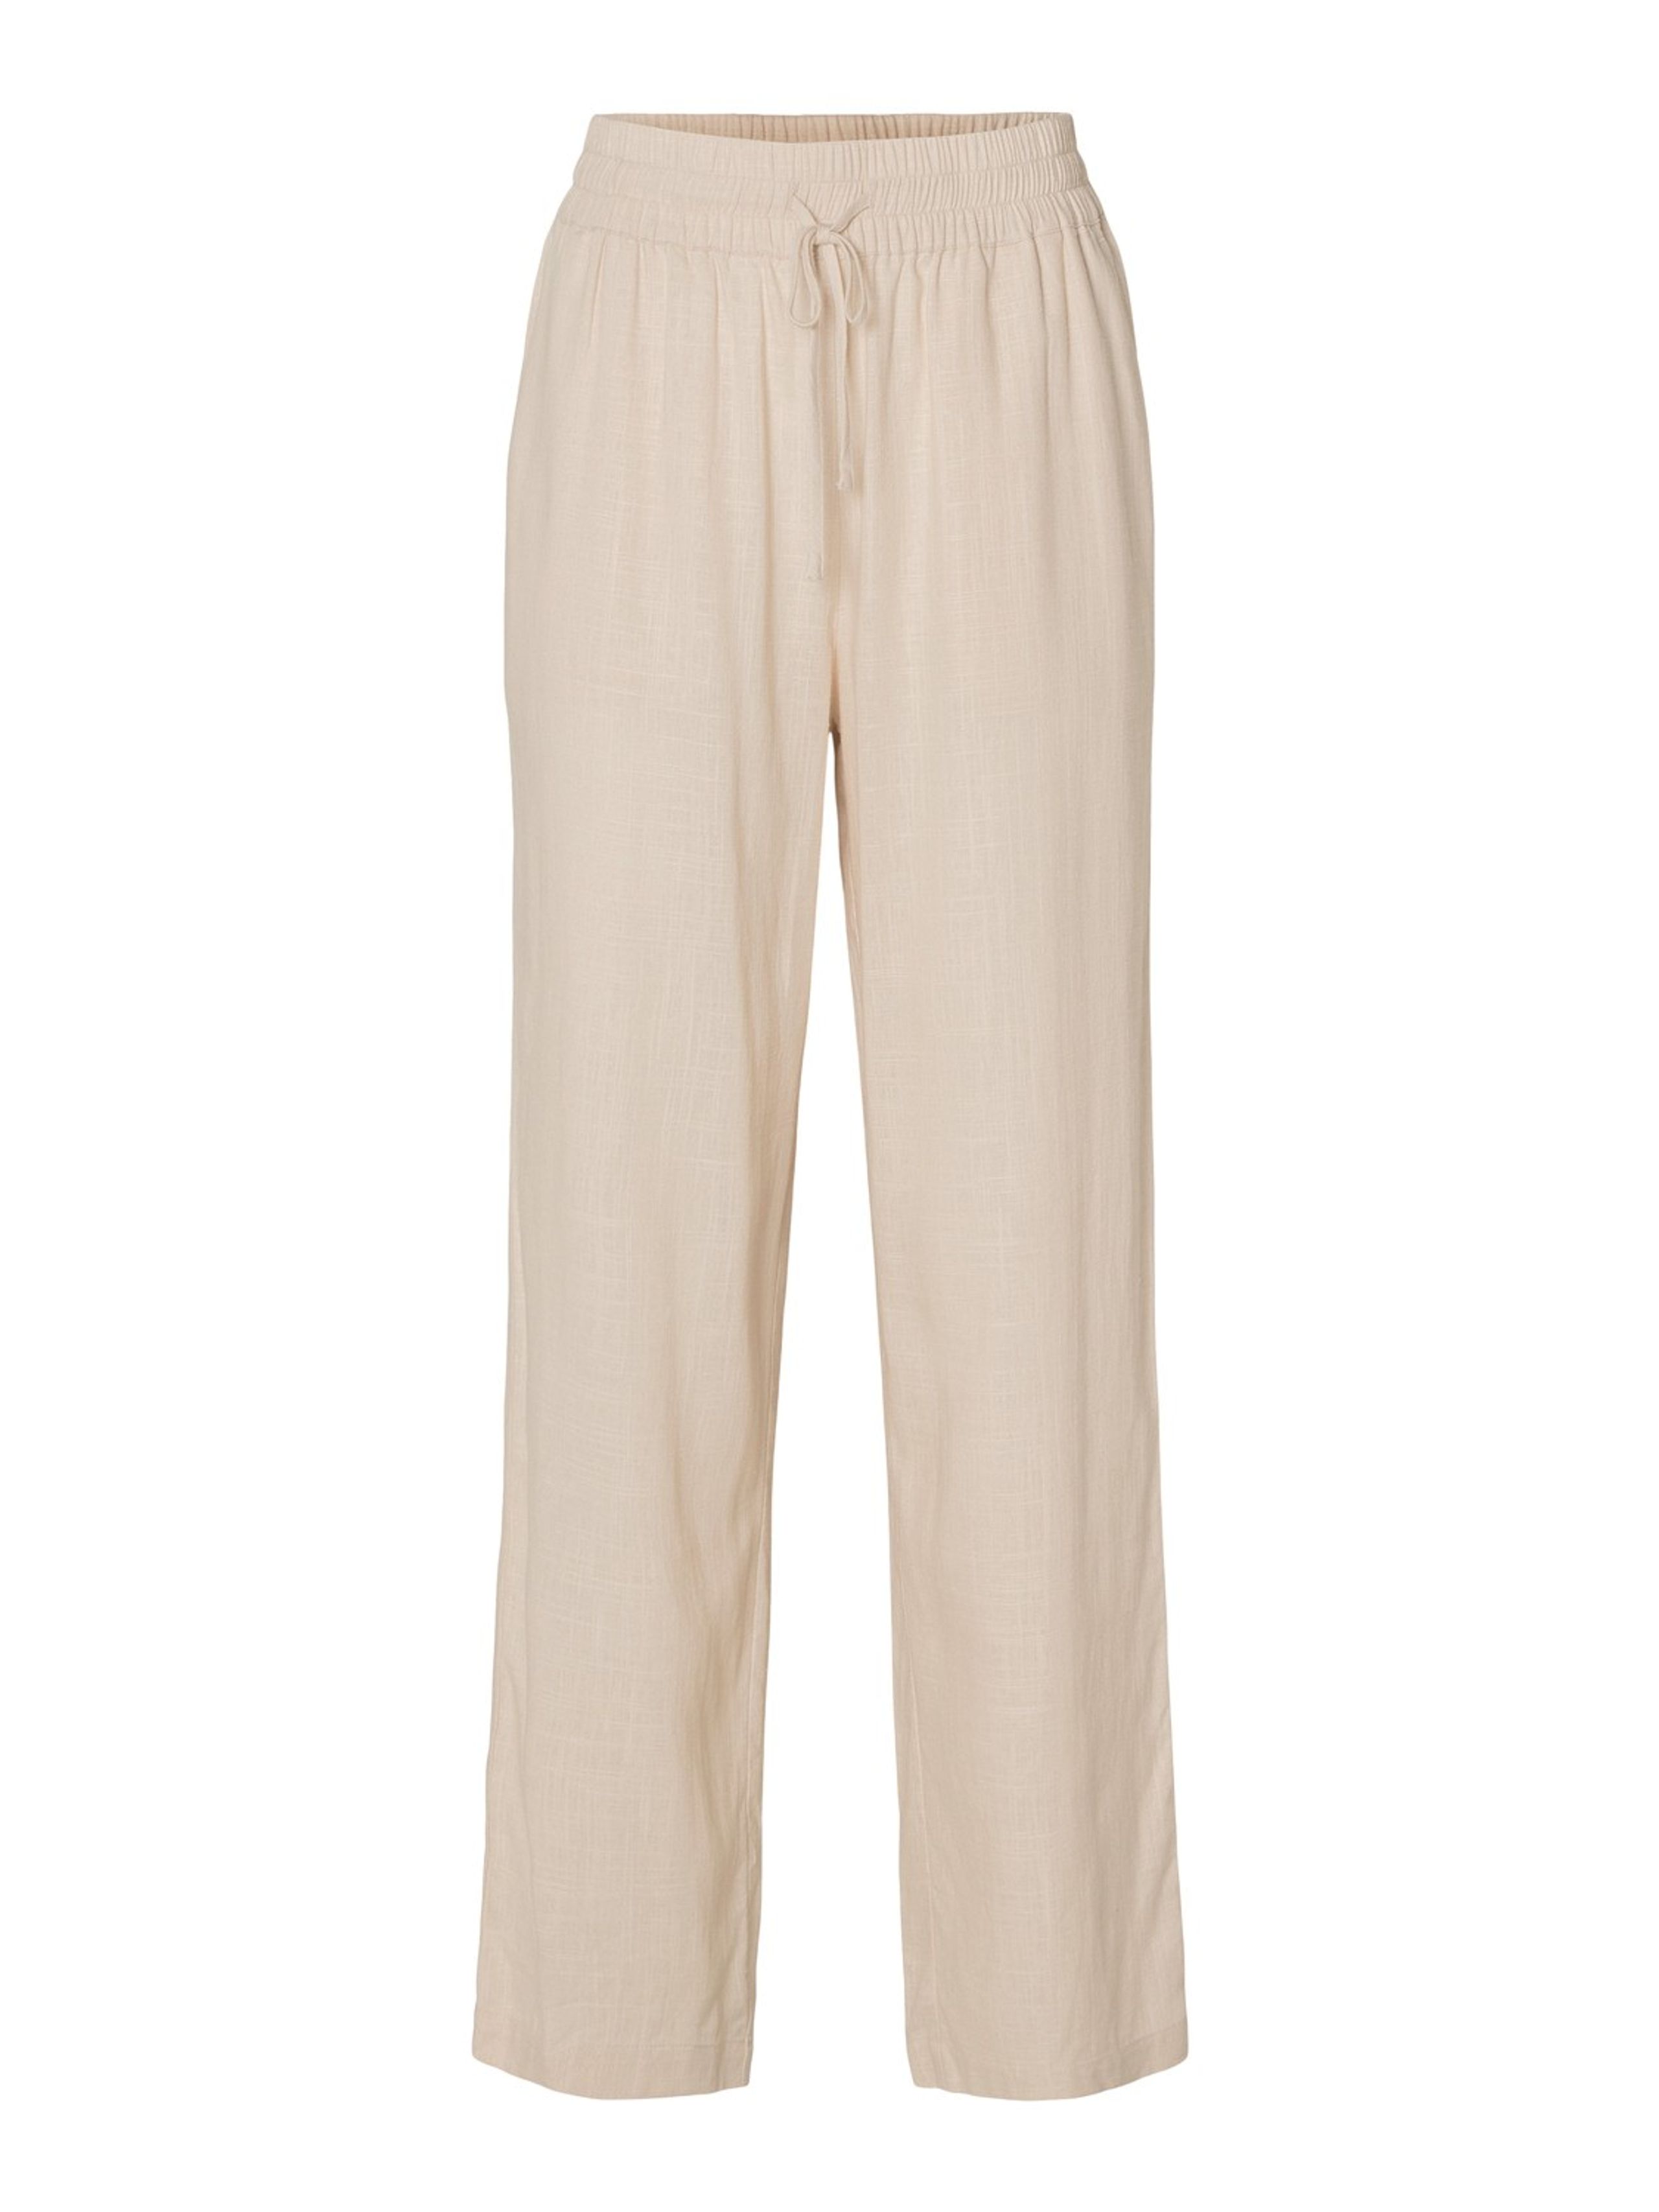 Selected Femme - Pantalon - SLFViva  - Gulia HW Long Linen Pants NOOS  - Sandshell